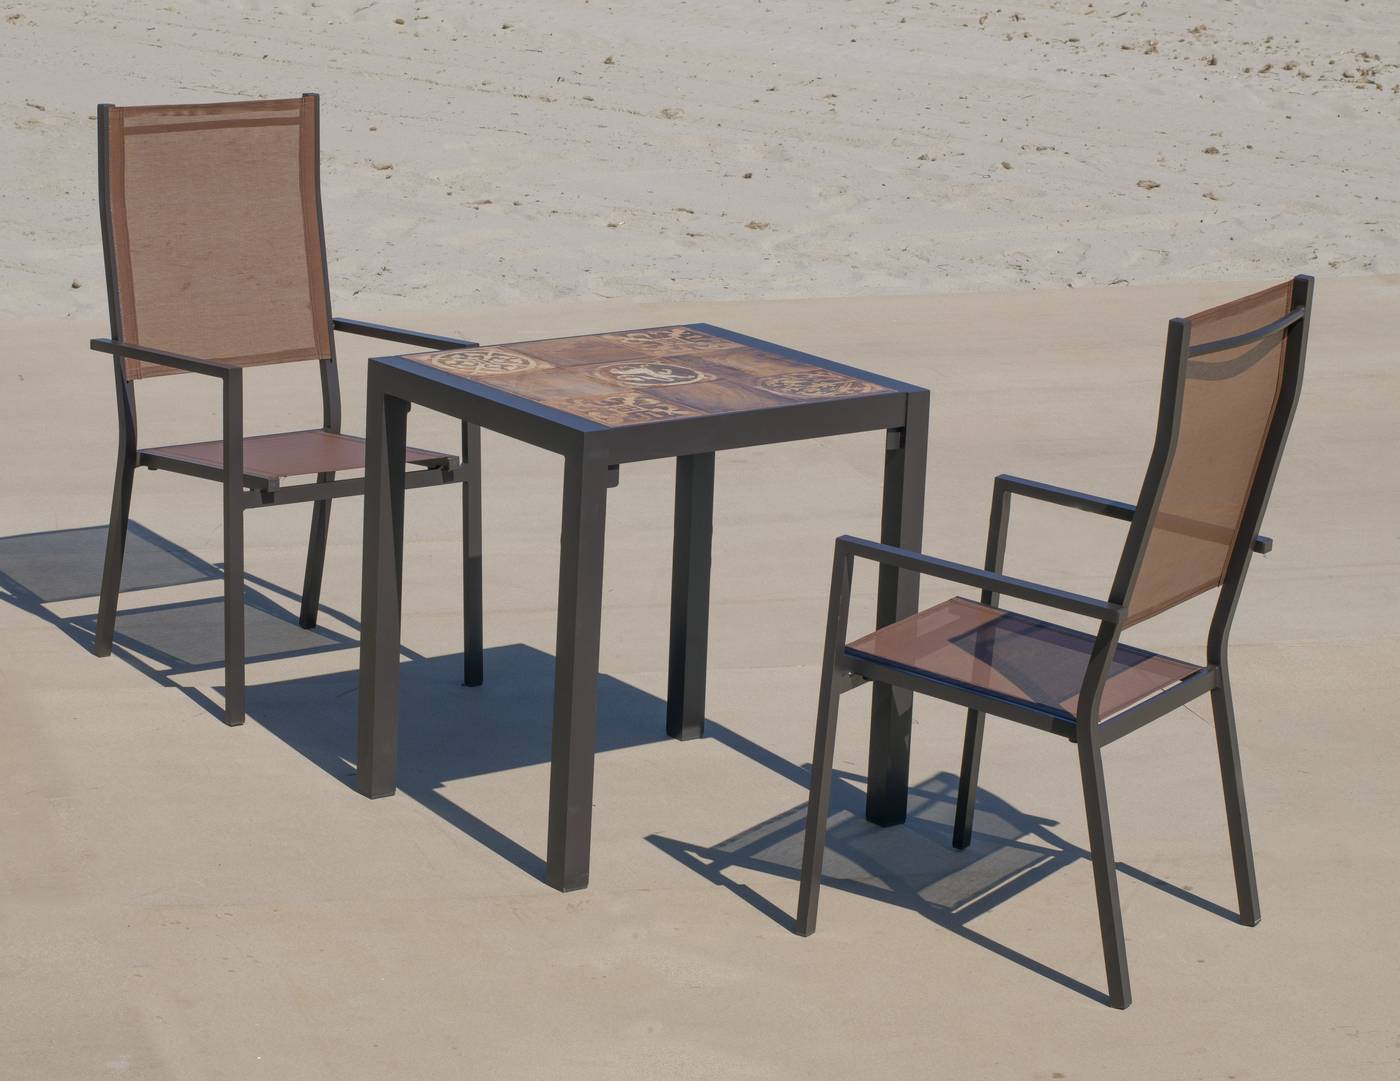 Conjunto de aluminio color marrón: Mesa cuadrada con tablero mosaico de 60 cm + 2 sillones altos de textilen.